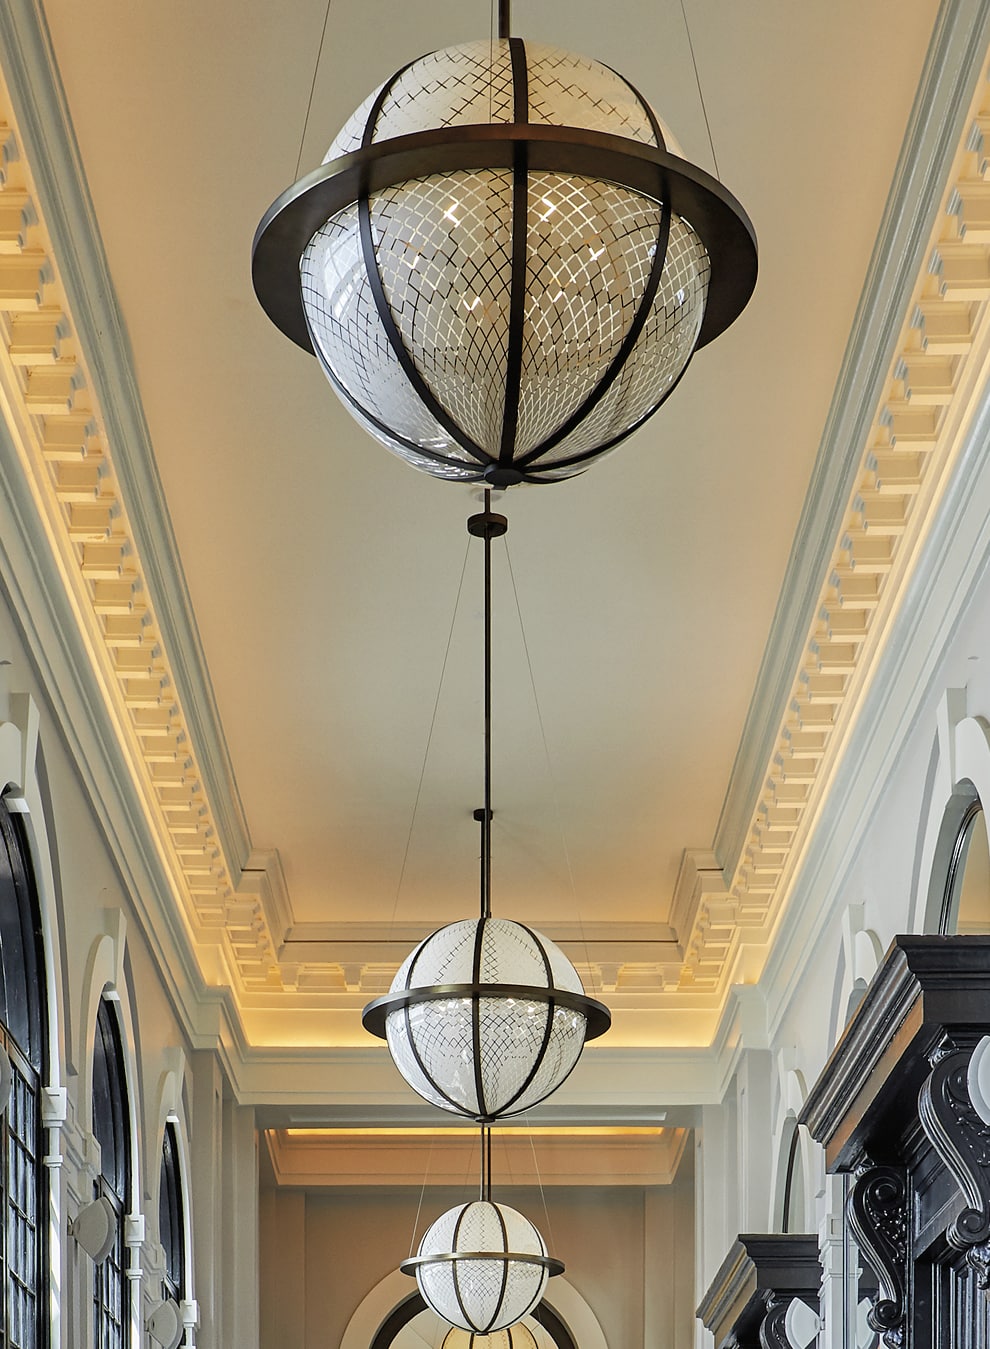 Spherical light fixtures in a hallway